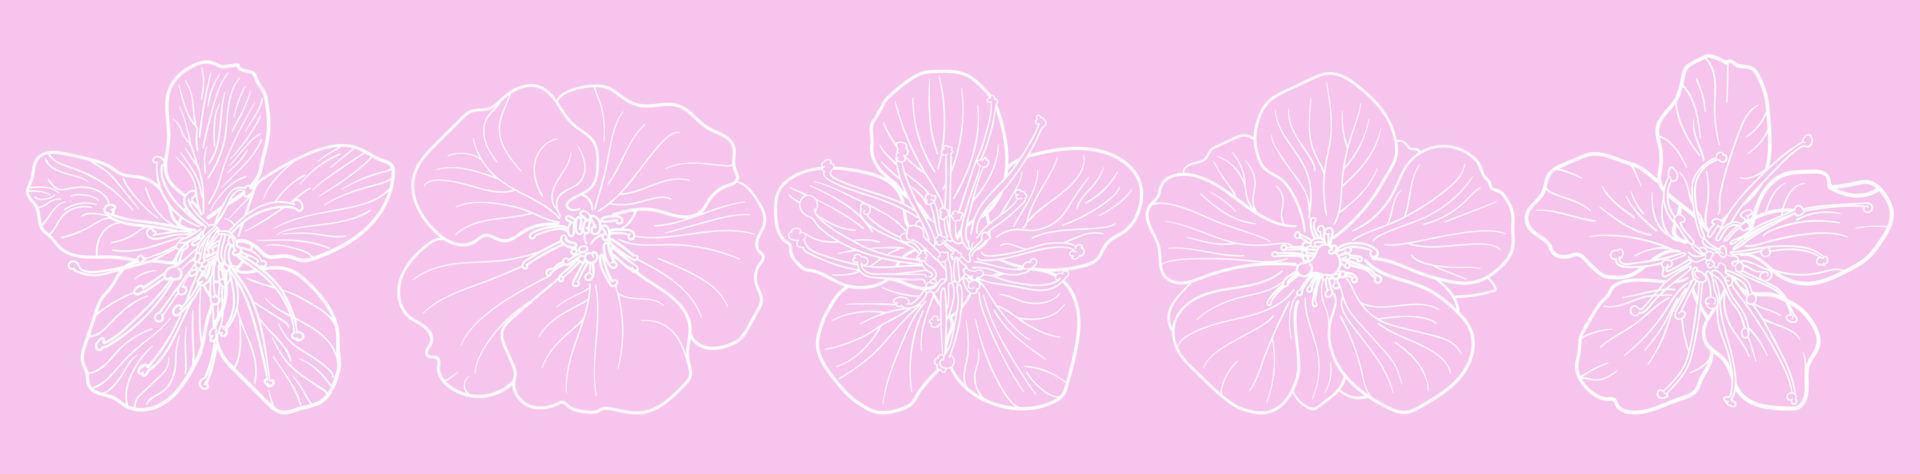 uppsättning av fem sakura blommor skisserar konst i ovanifrån sköt vektorer mot på pastellrosa tapeter